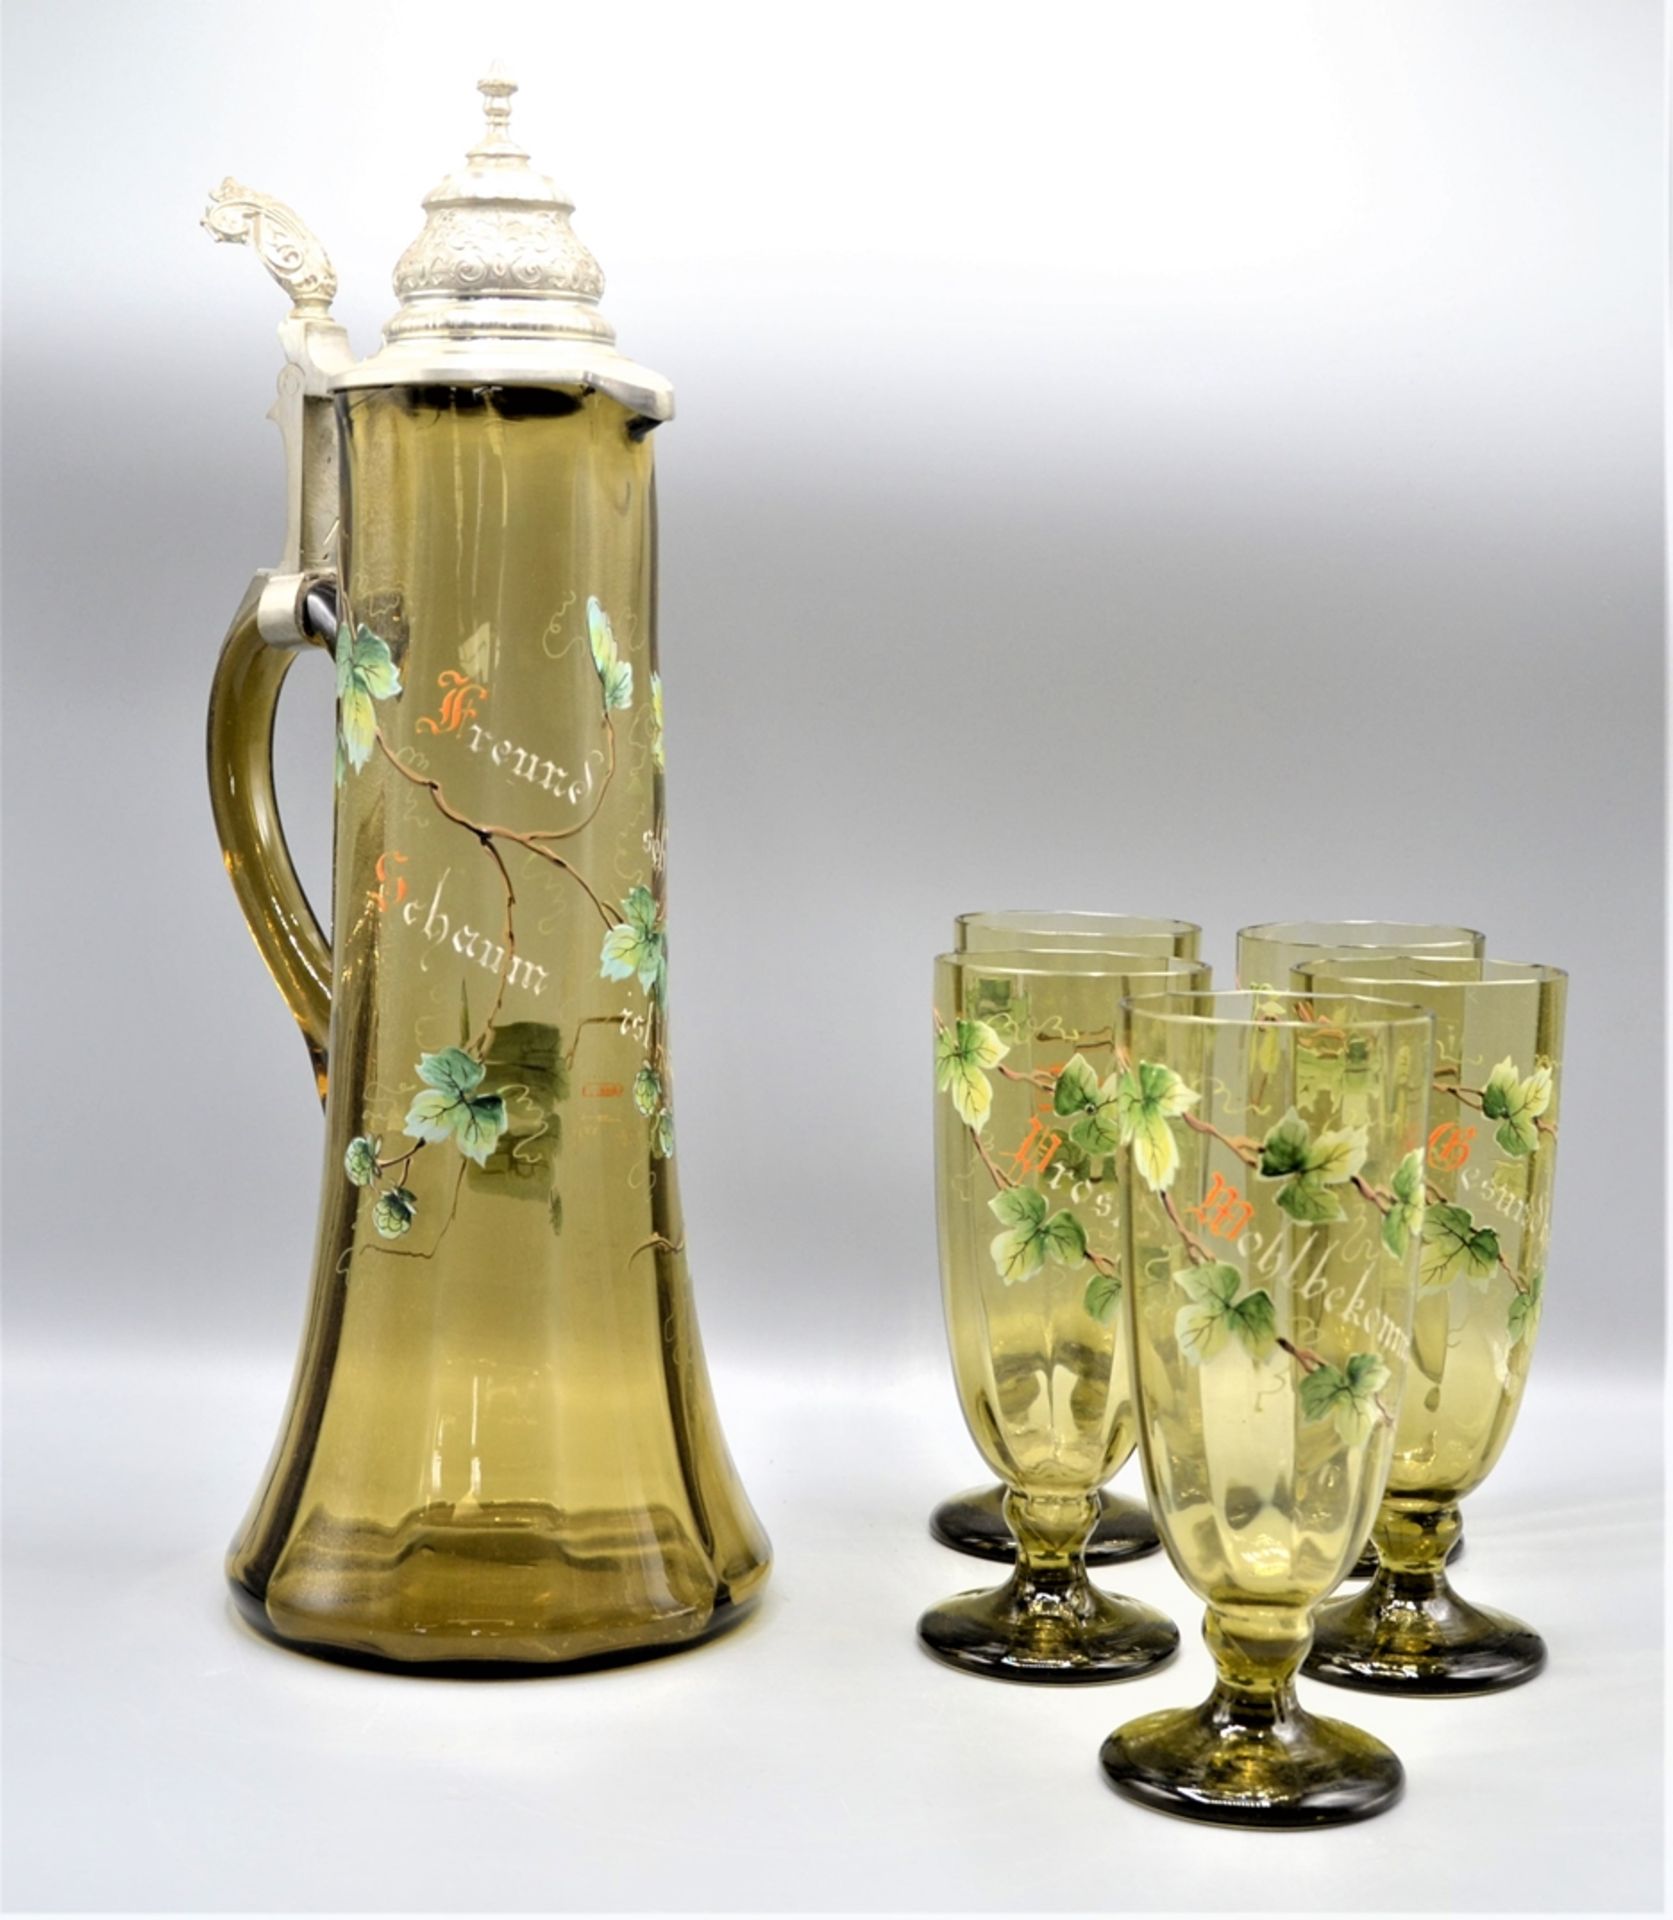 Glas Krug Schankkrug mit 5 Gläsern um 1900, emailliert mit Hopfen Stauden und Trinksprüchen, mundge